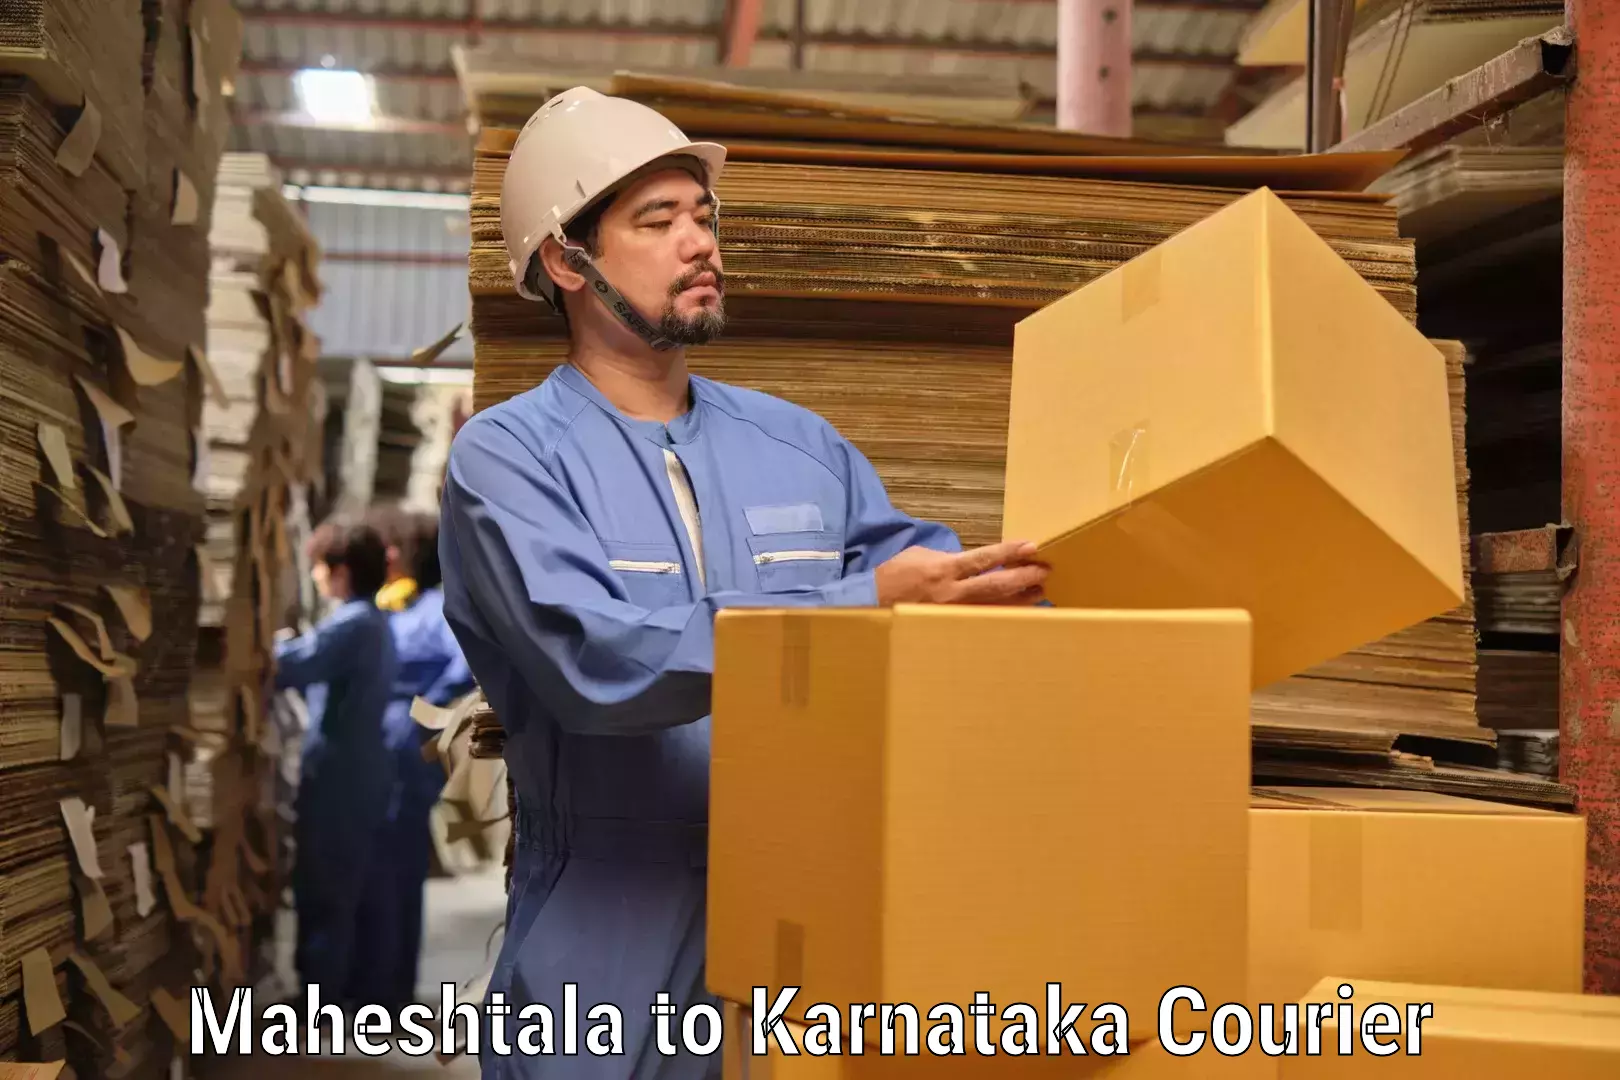 Doorstep delivery service Maheshtala to Kanakapura